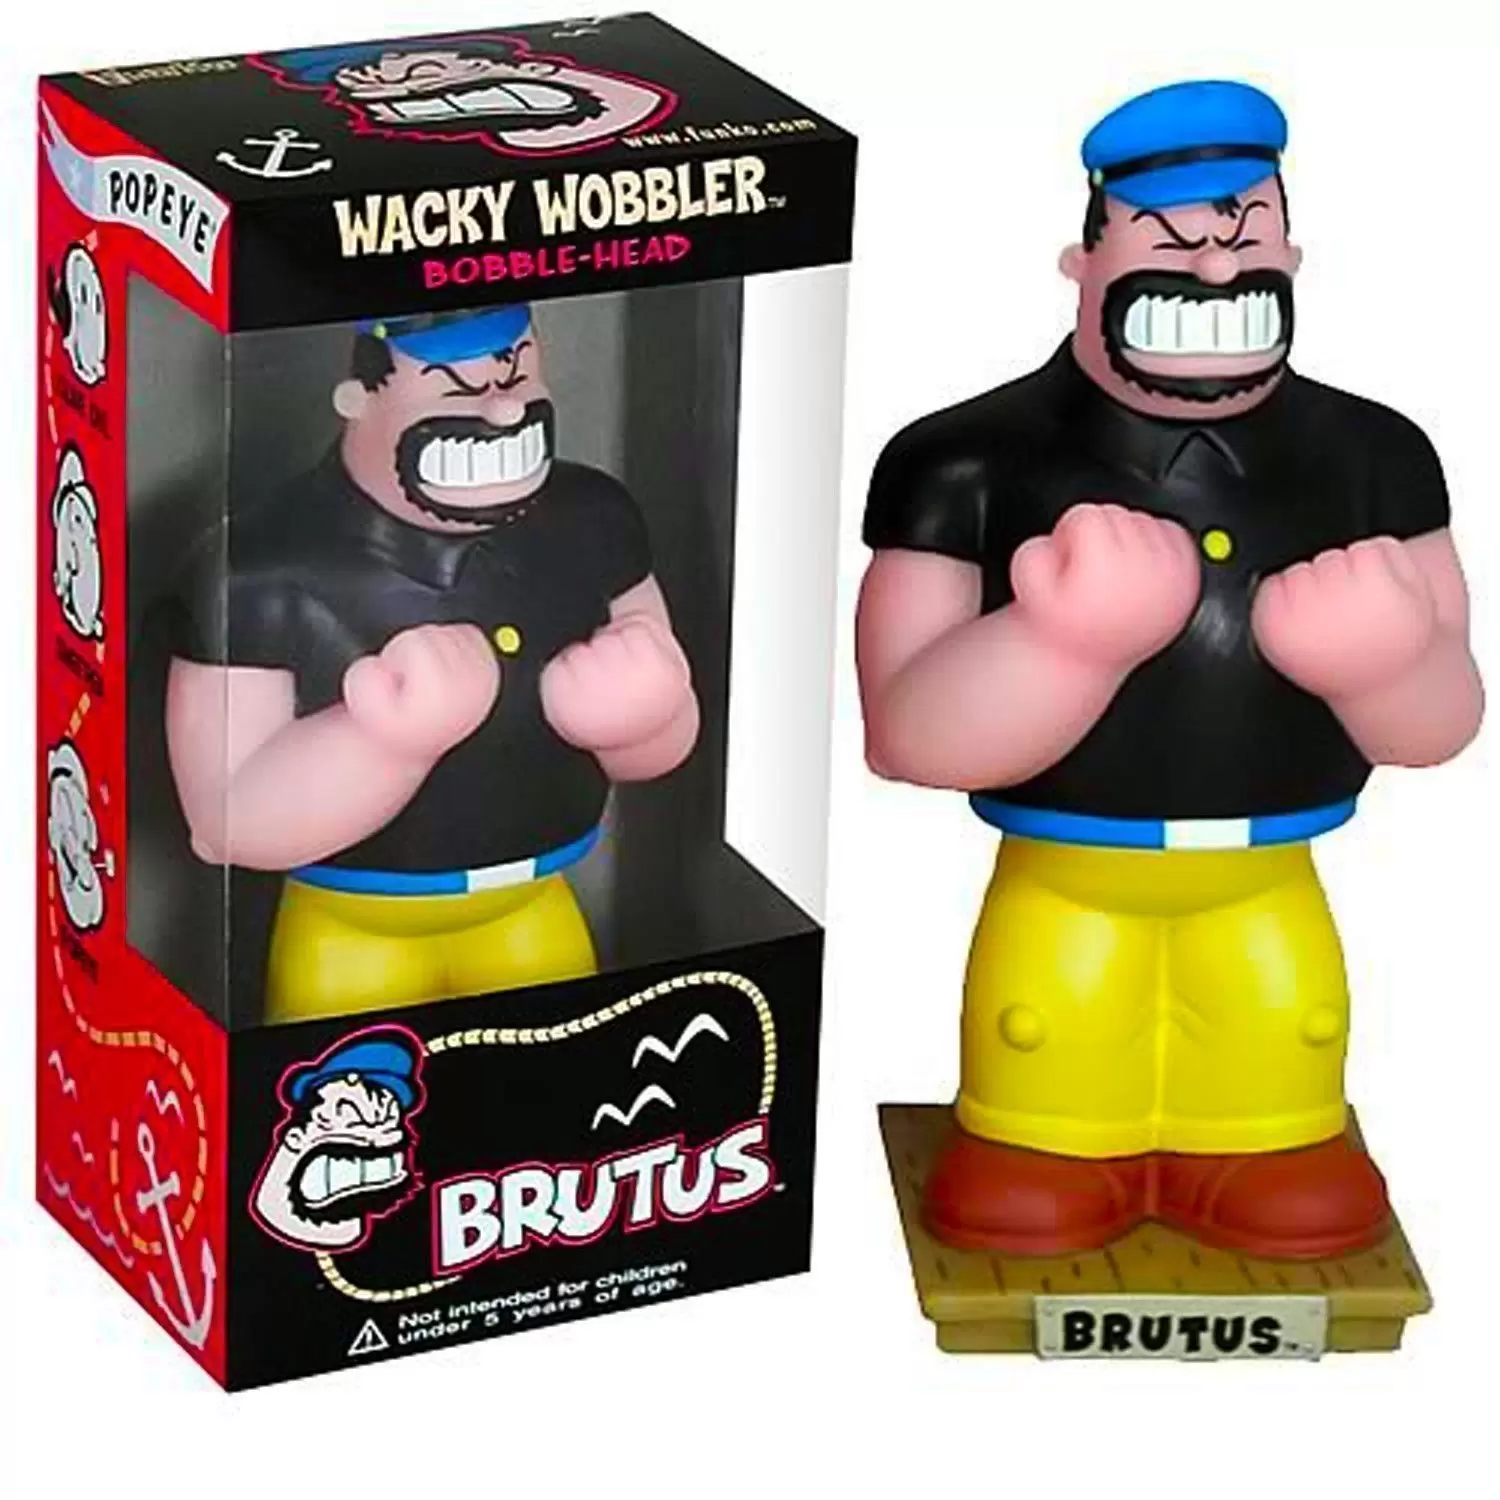 Wacky Wobbler Cartoons - Brutus